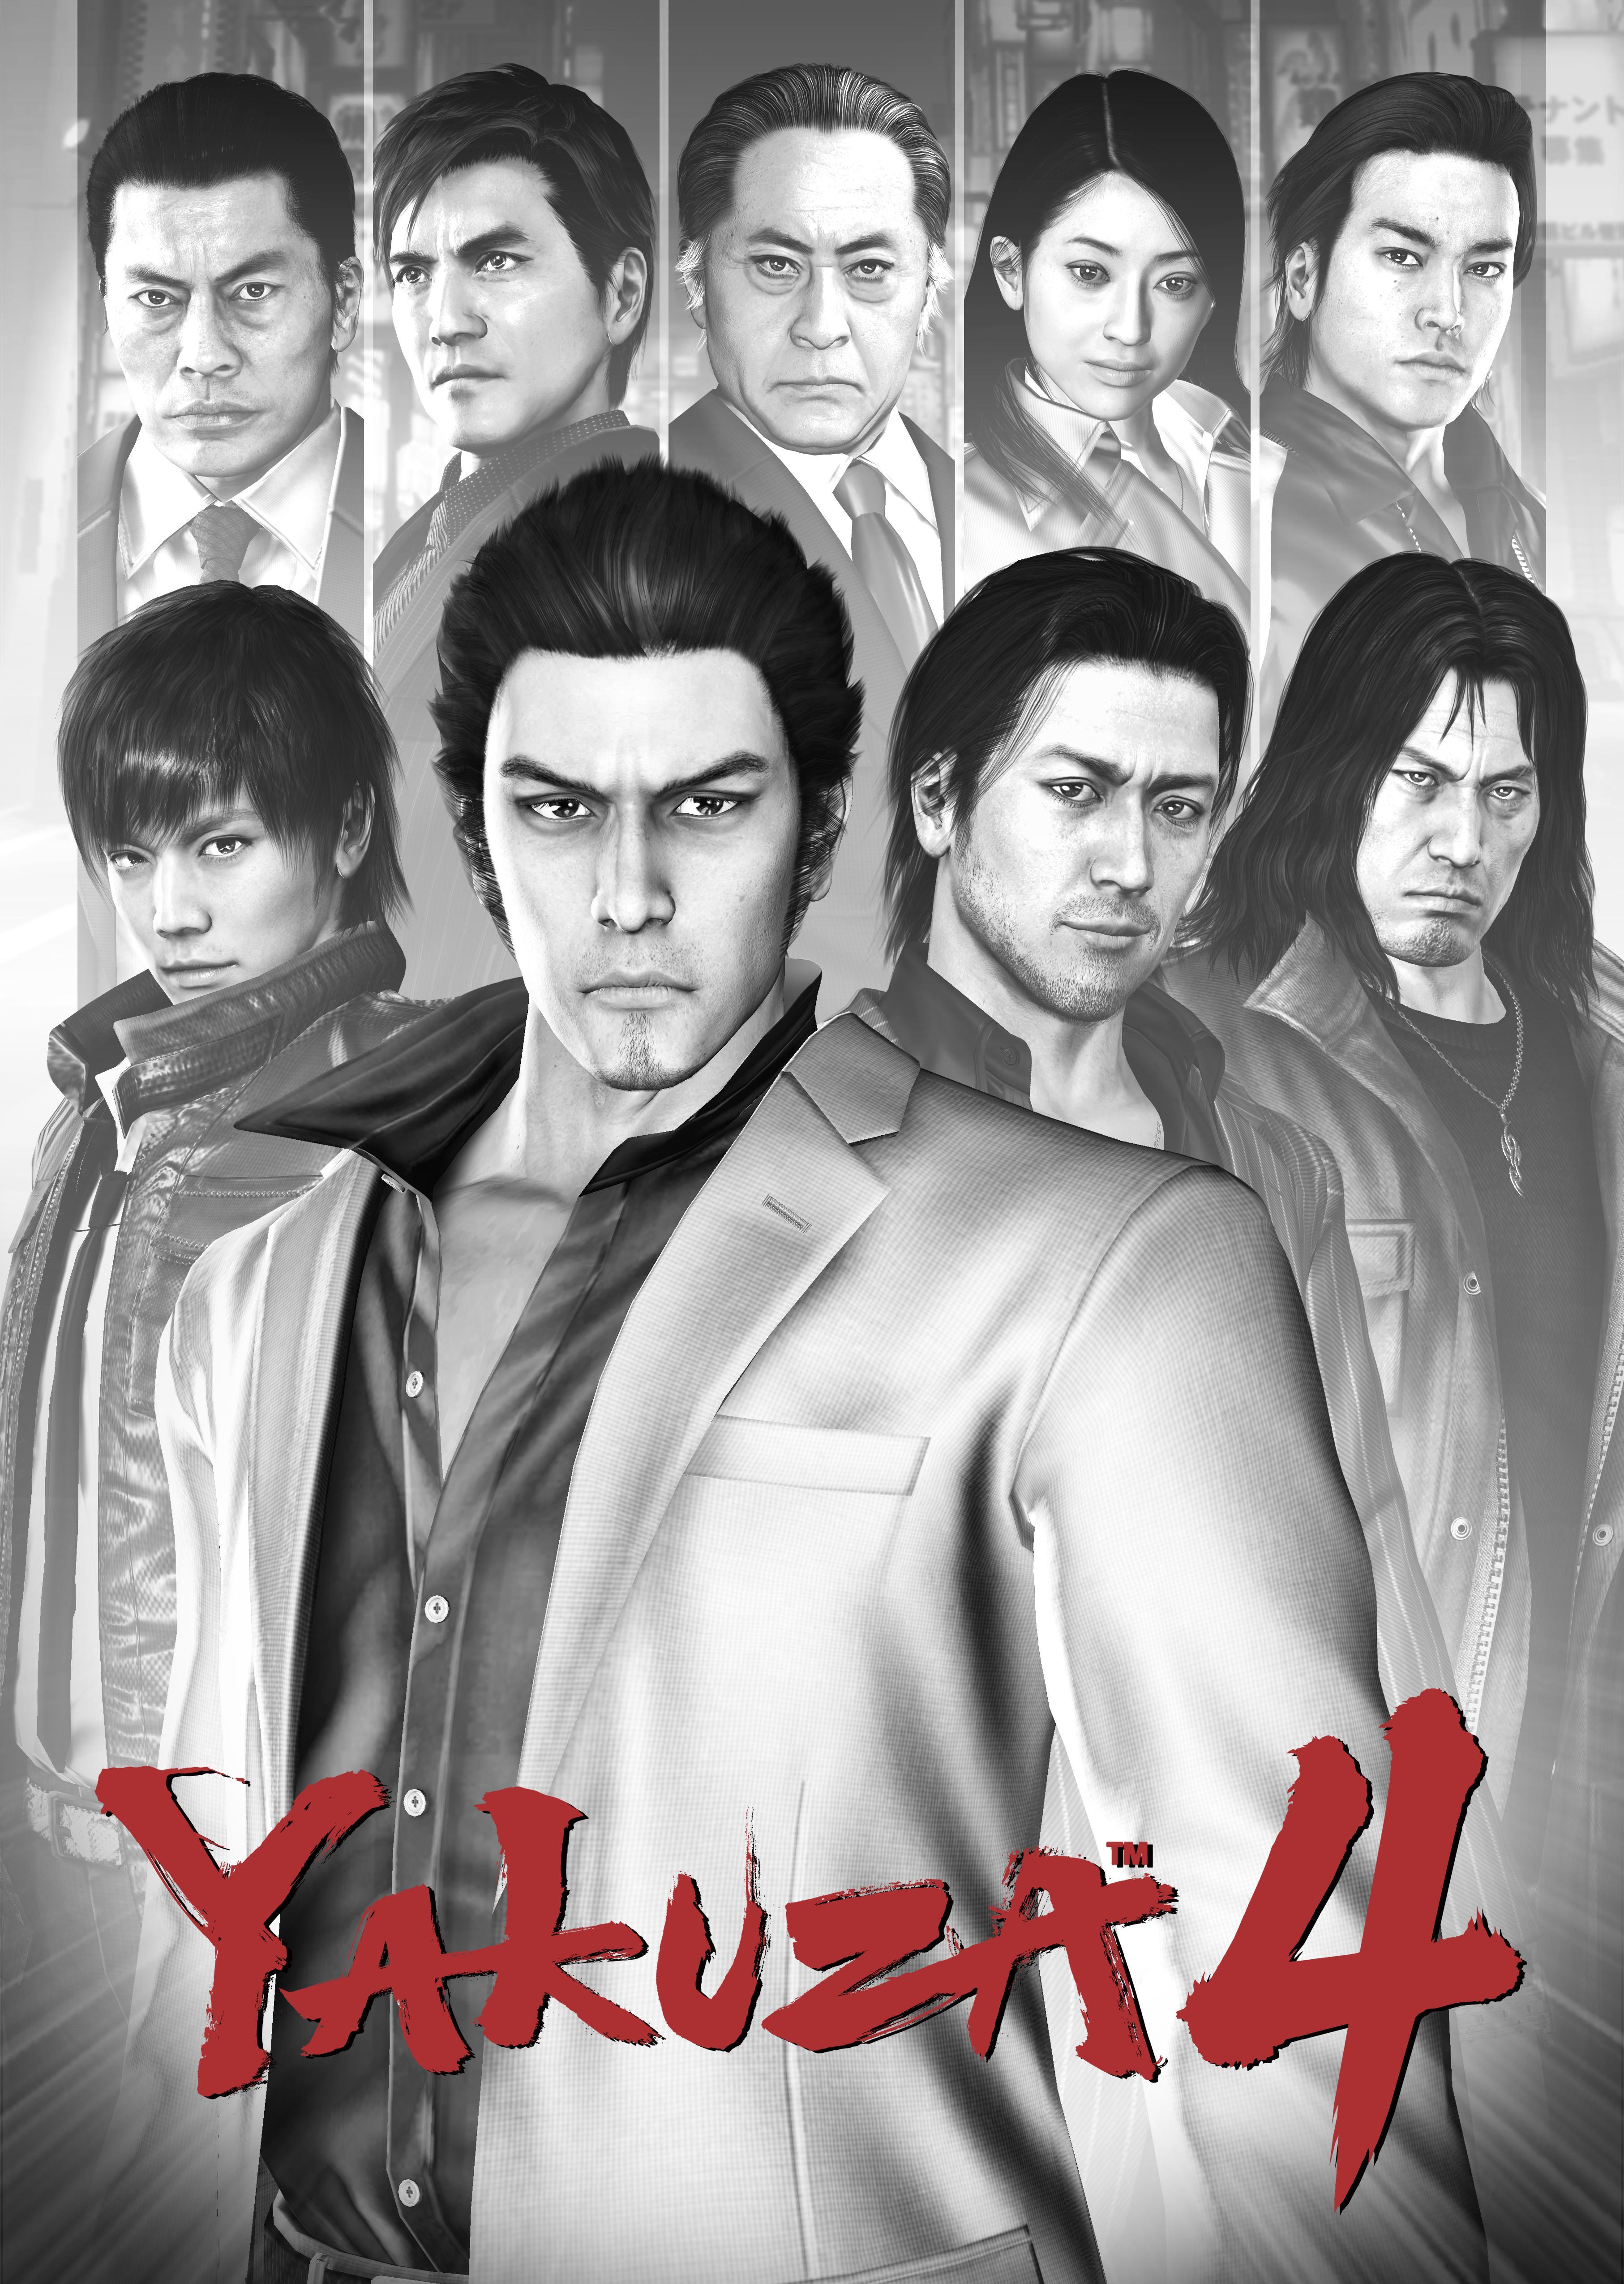 himeka yakuza 4 download